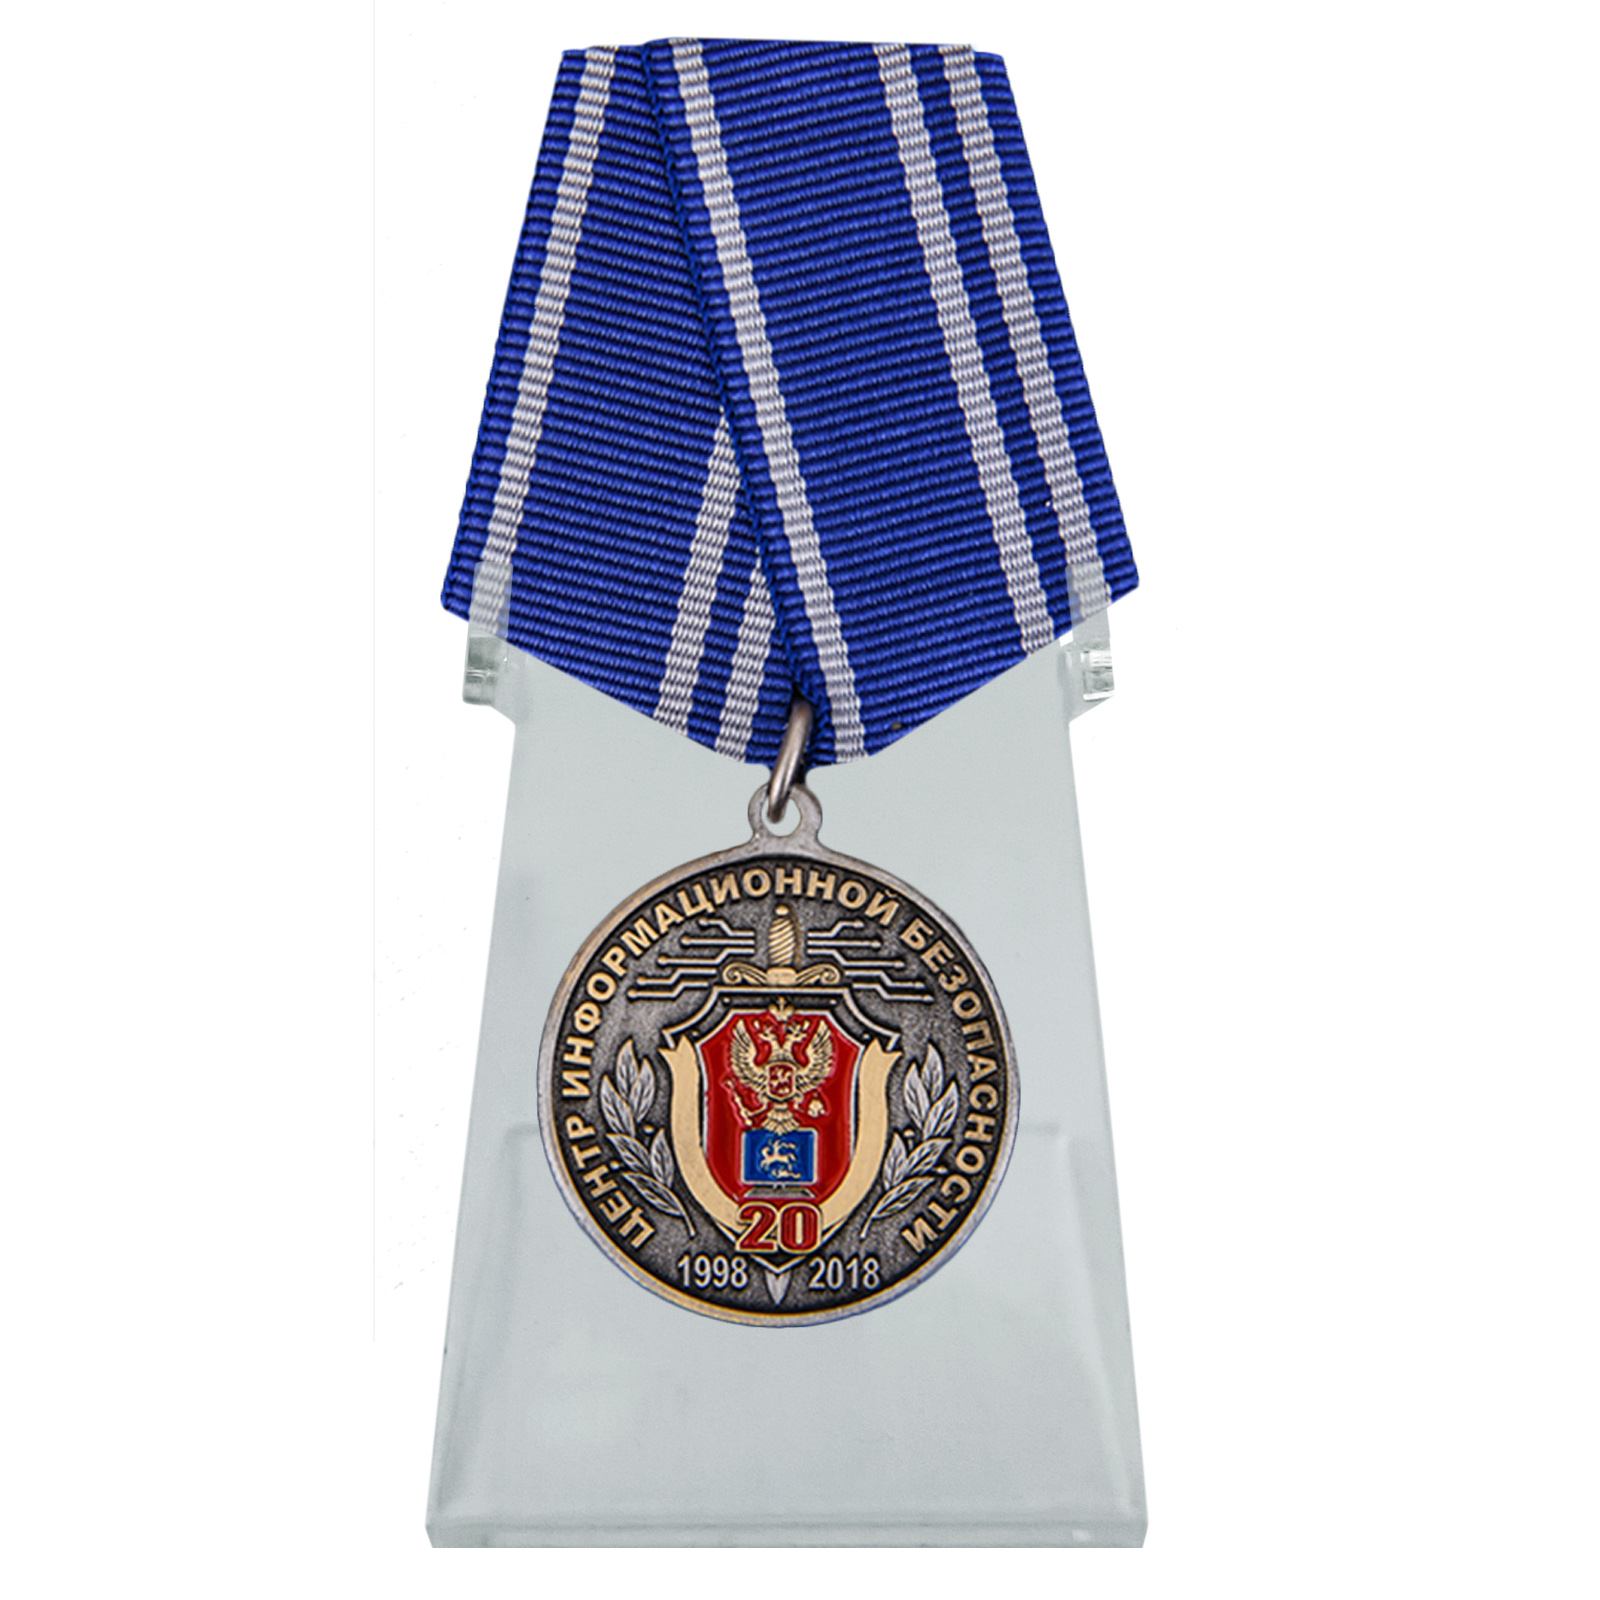 Купить медаль 20 лет Центру информационной безопасности ФСБ России на подставке в подарок